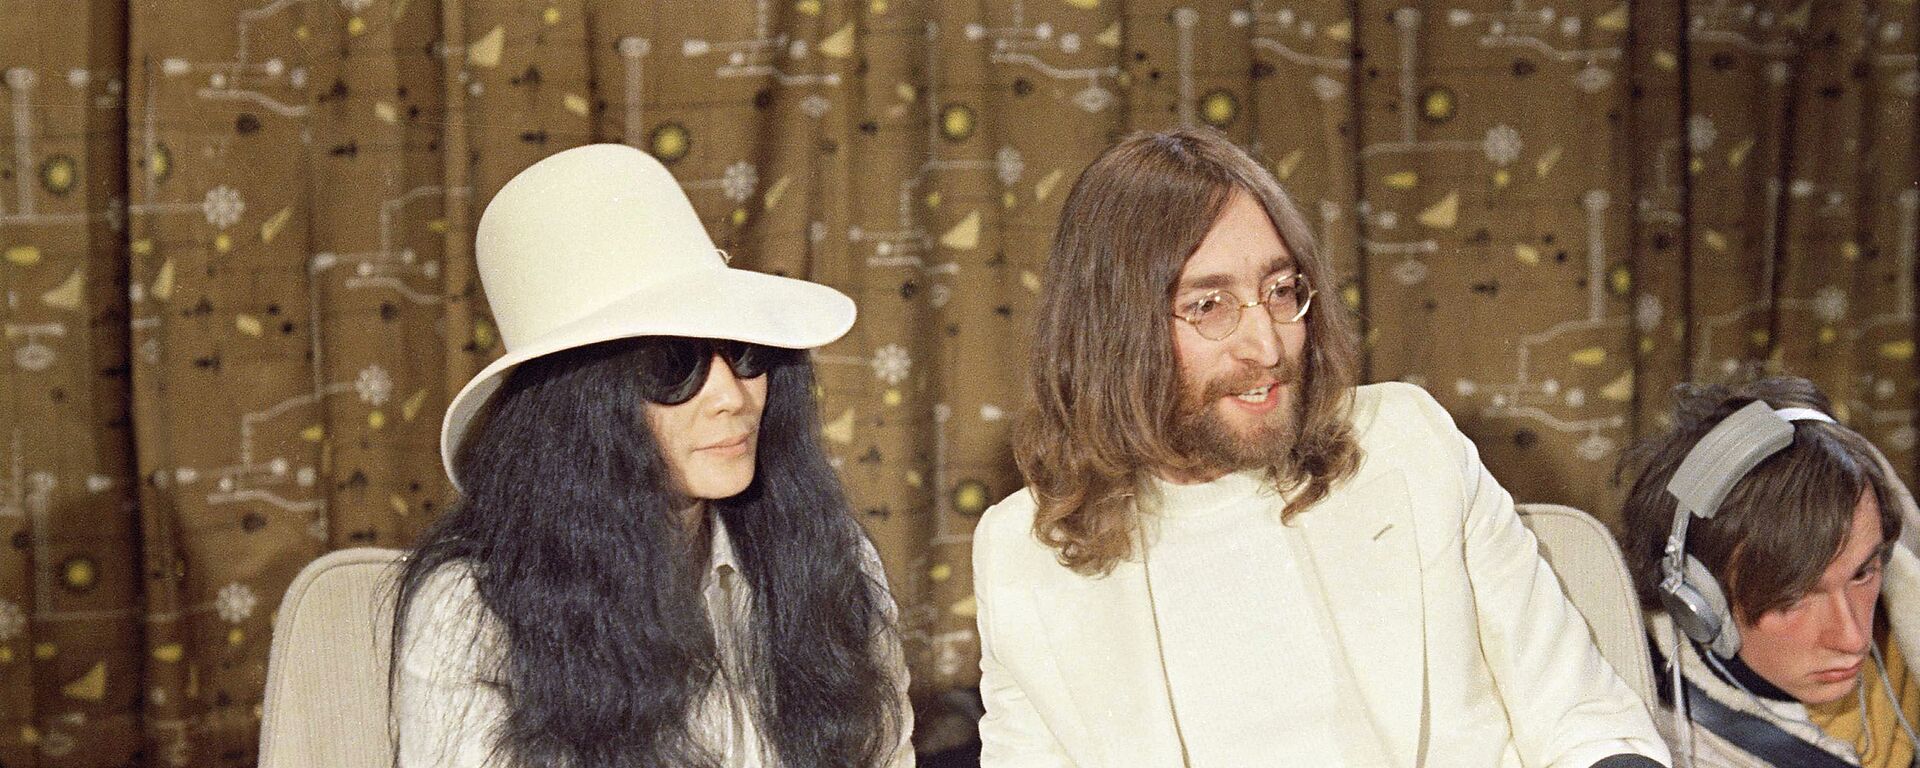 John Lennon junto a su esposa, Yoko Ono - Sputnik Mundo, 1920, 07.12.2020